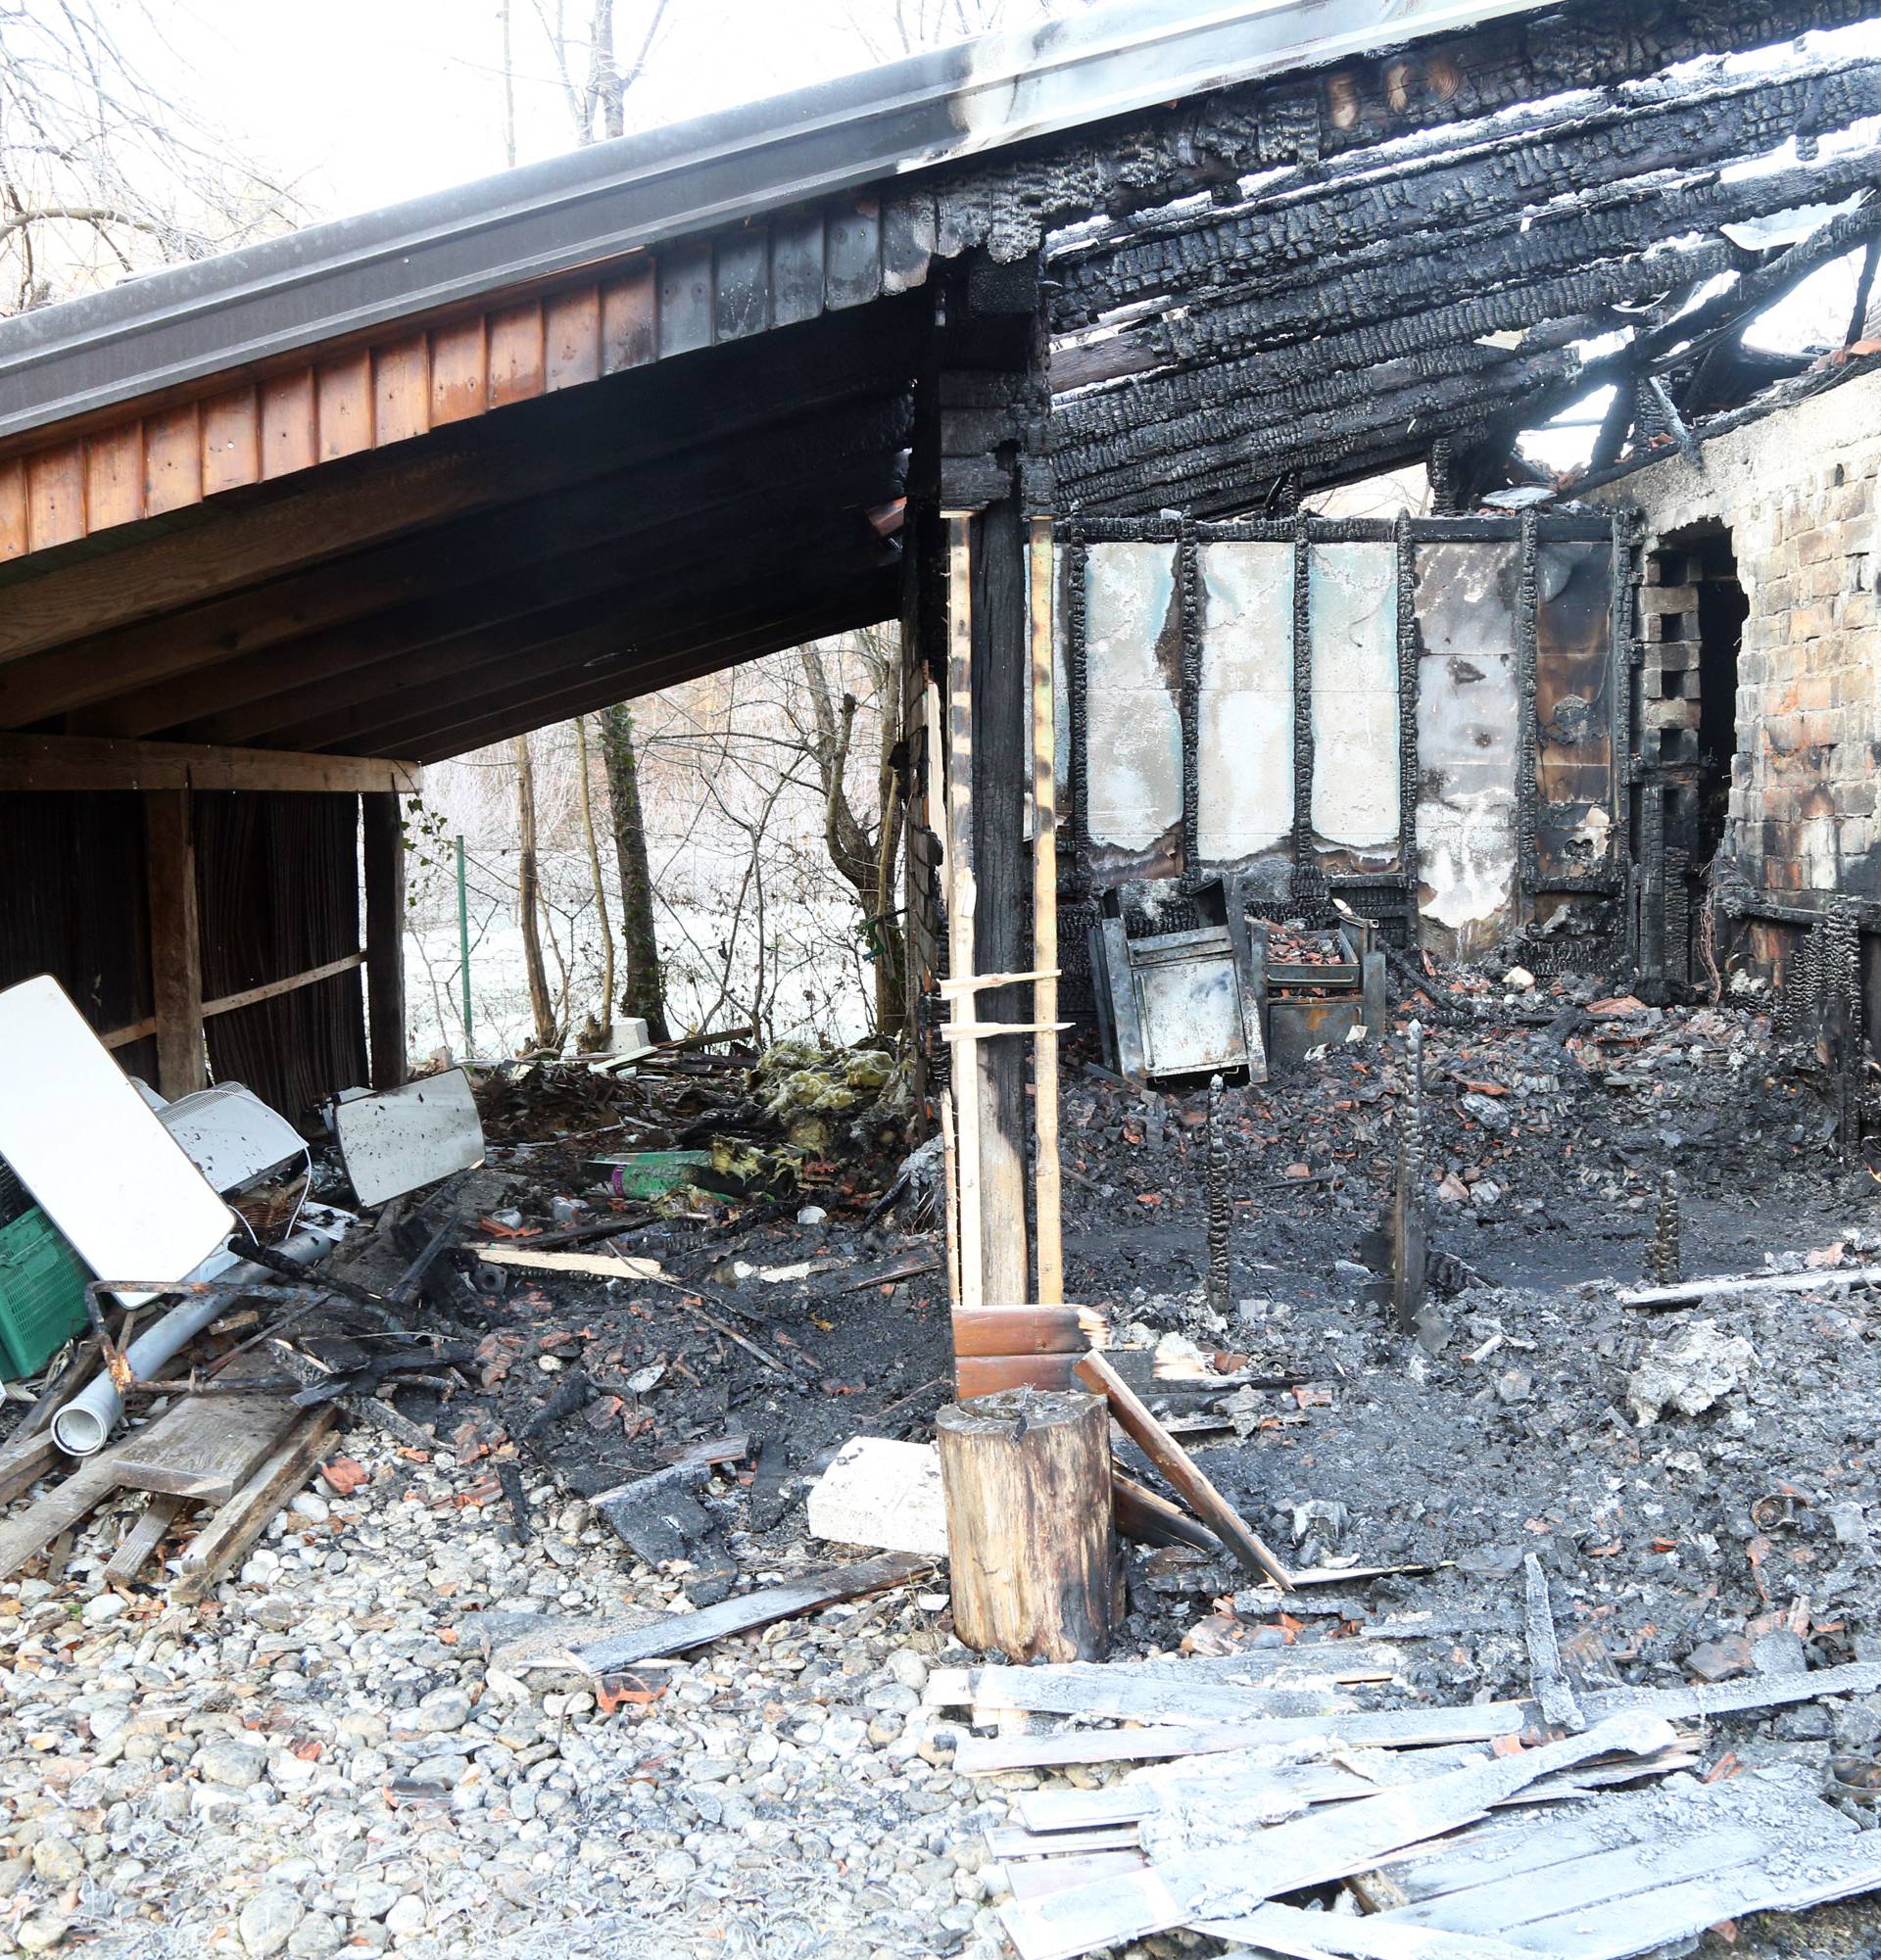 Prodaju kuću kraj zgarišta doma  u kojem su izgorjeli ljudi